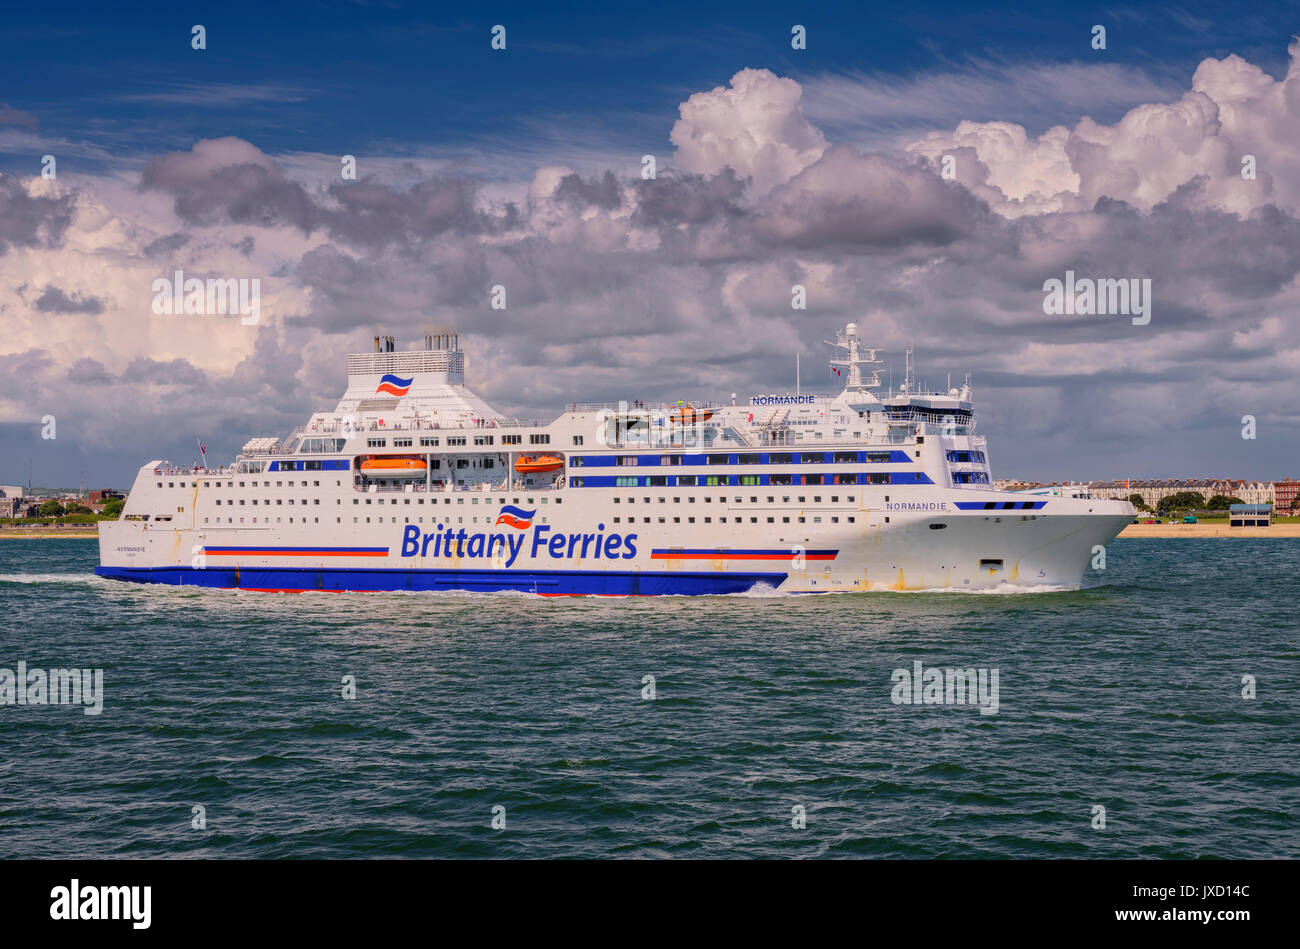 Brittany Ferries - Normandie de quitter le port de Portsmouth à destination de la France. Banque D'Images